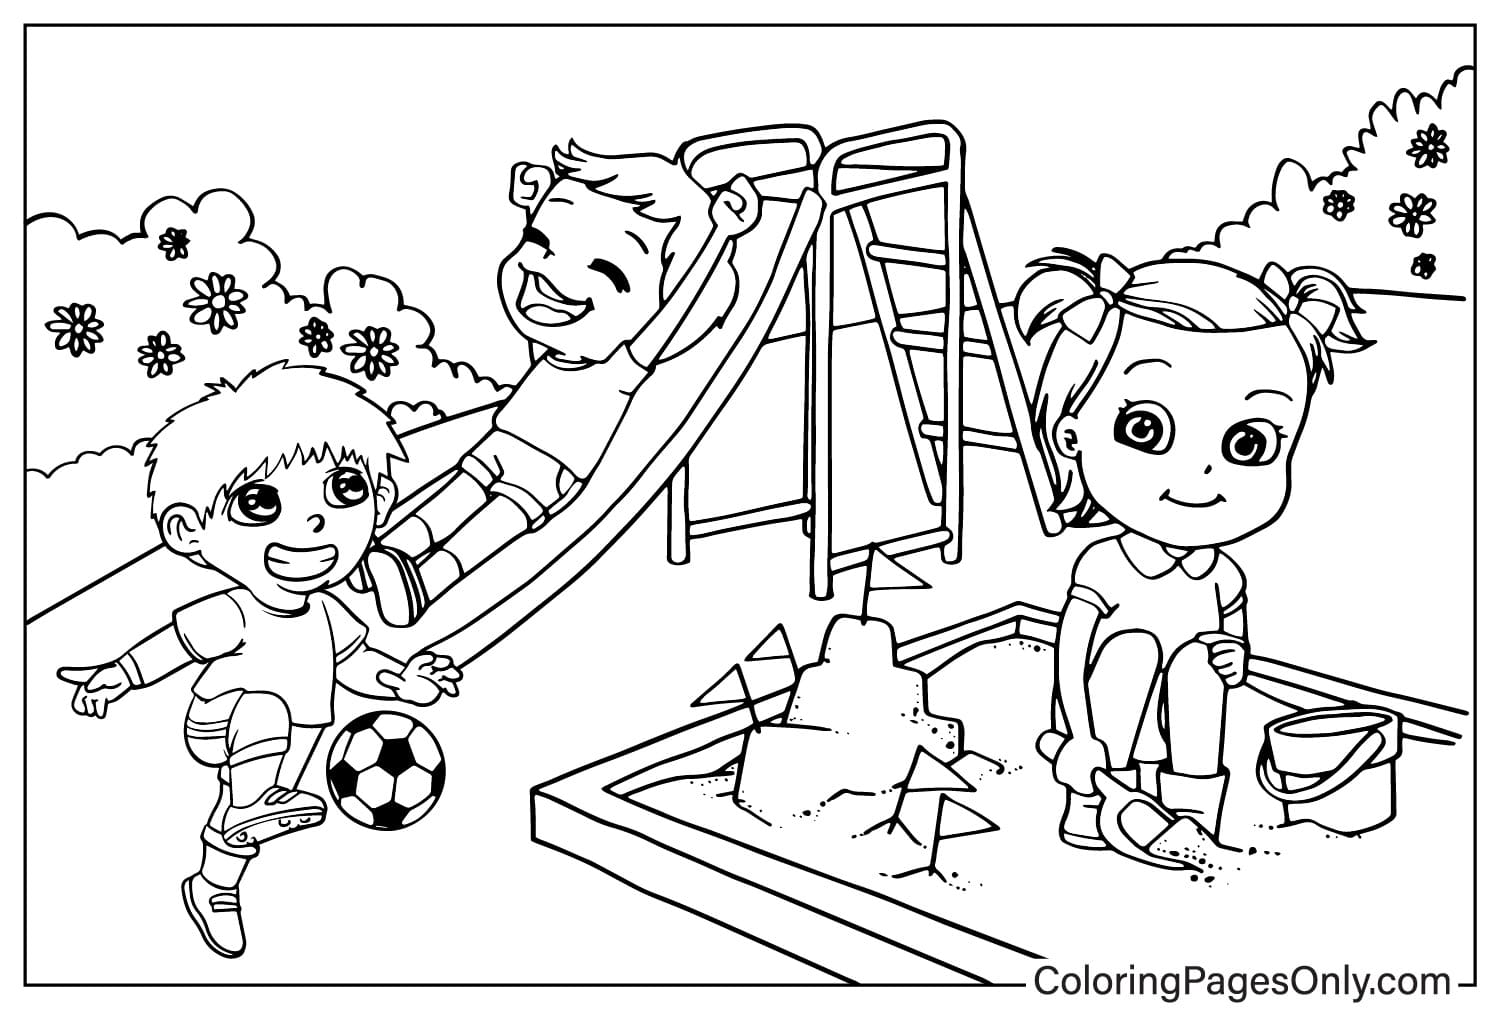 Página para colorir do Playground grátis no Playground